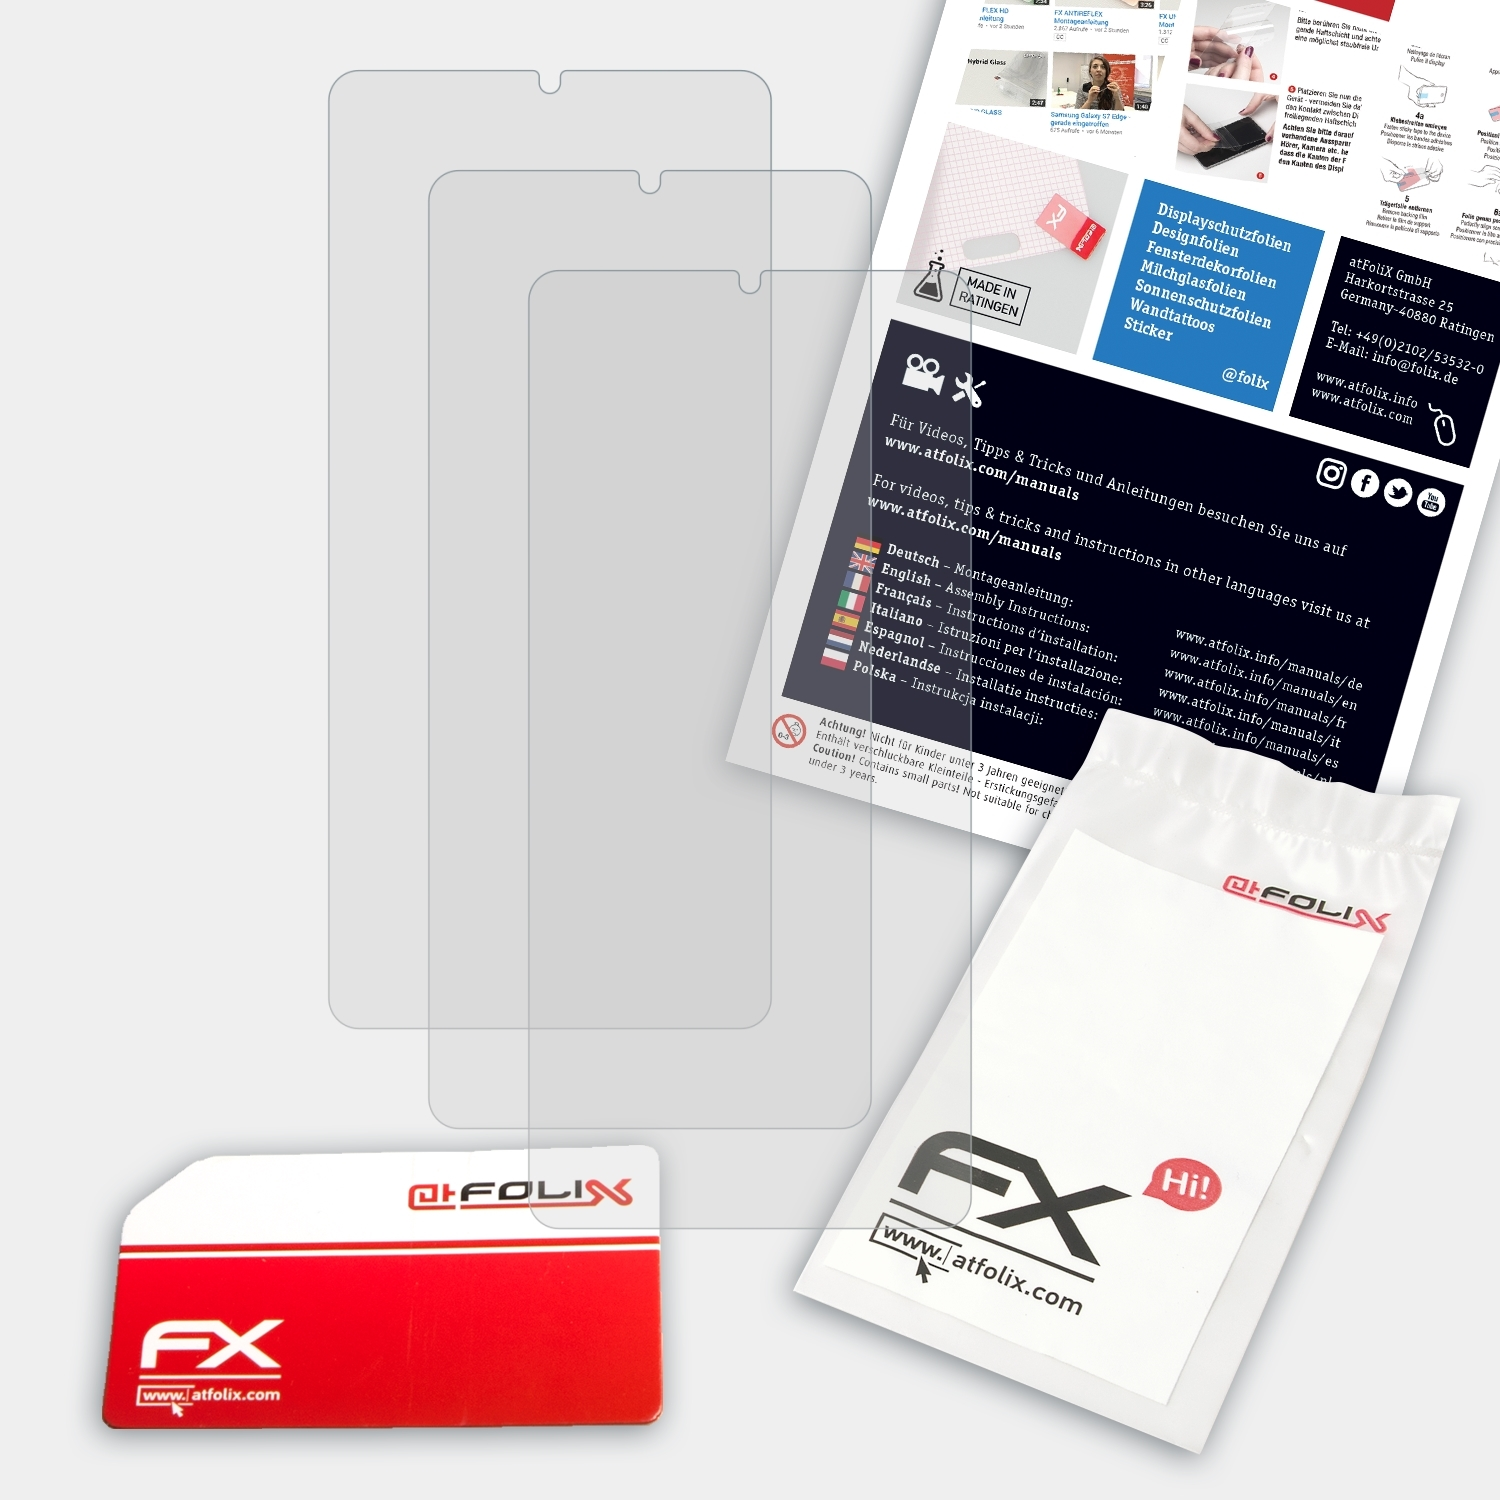 FX-Antireflex 3x Displayschutz(für ATFOLIX S11) Leagoo